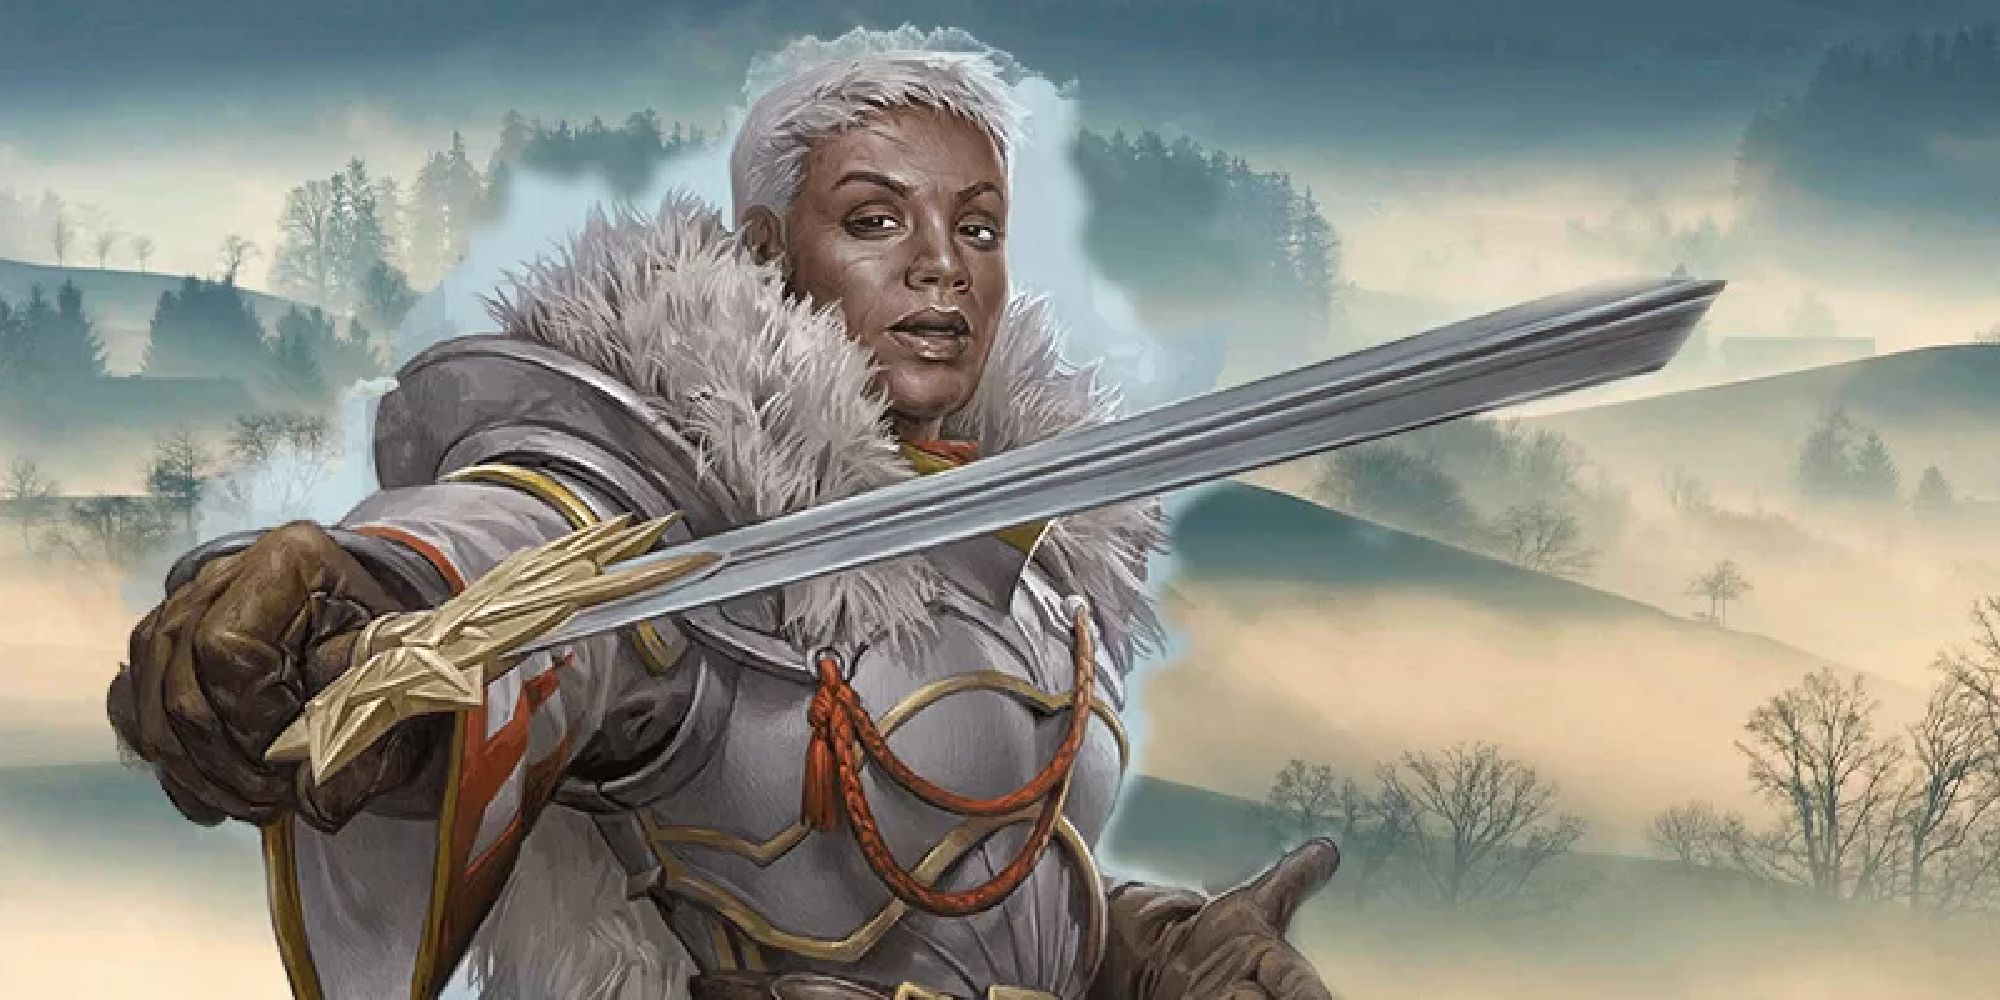 Una mujer blindada envuelta contra el clima de la tundra blandiendo su espada desafiante.